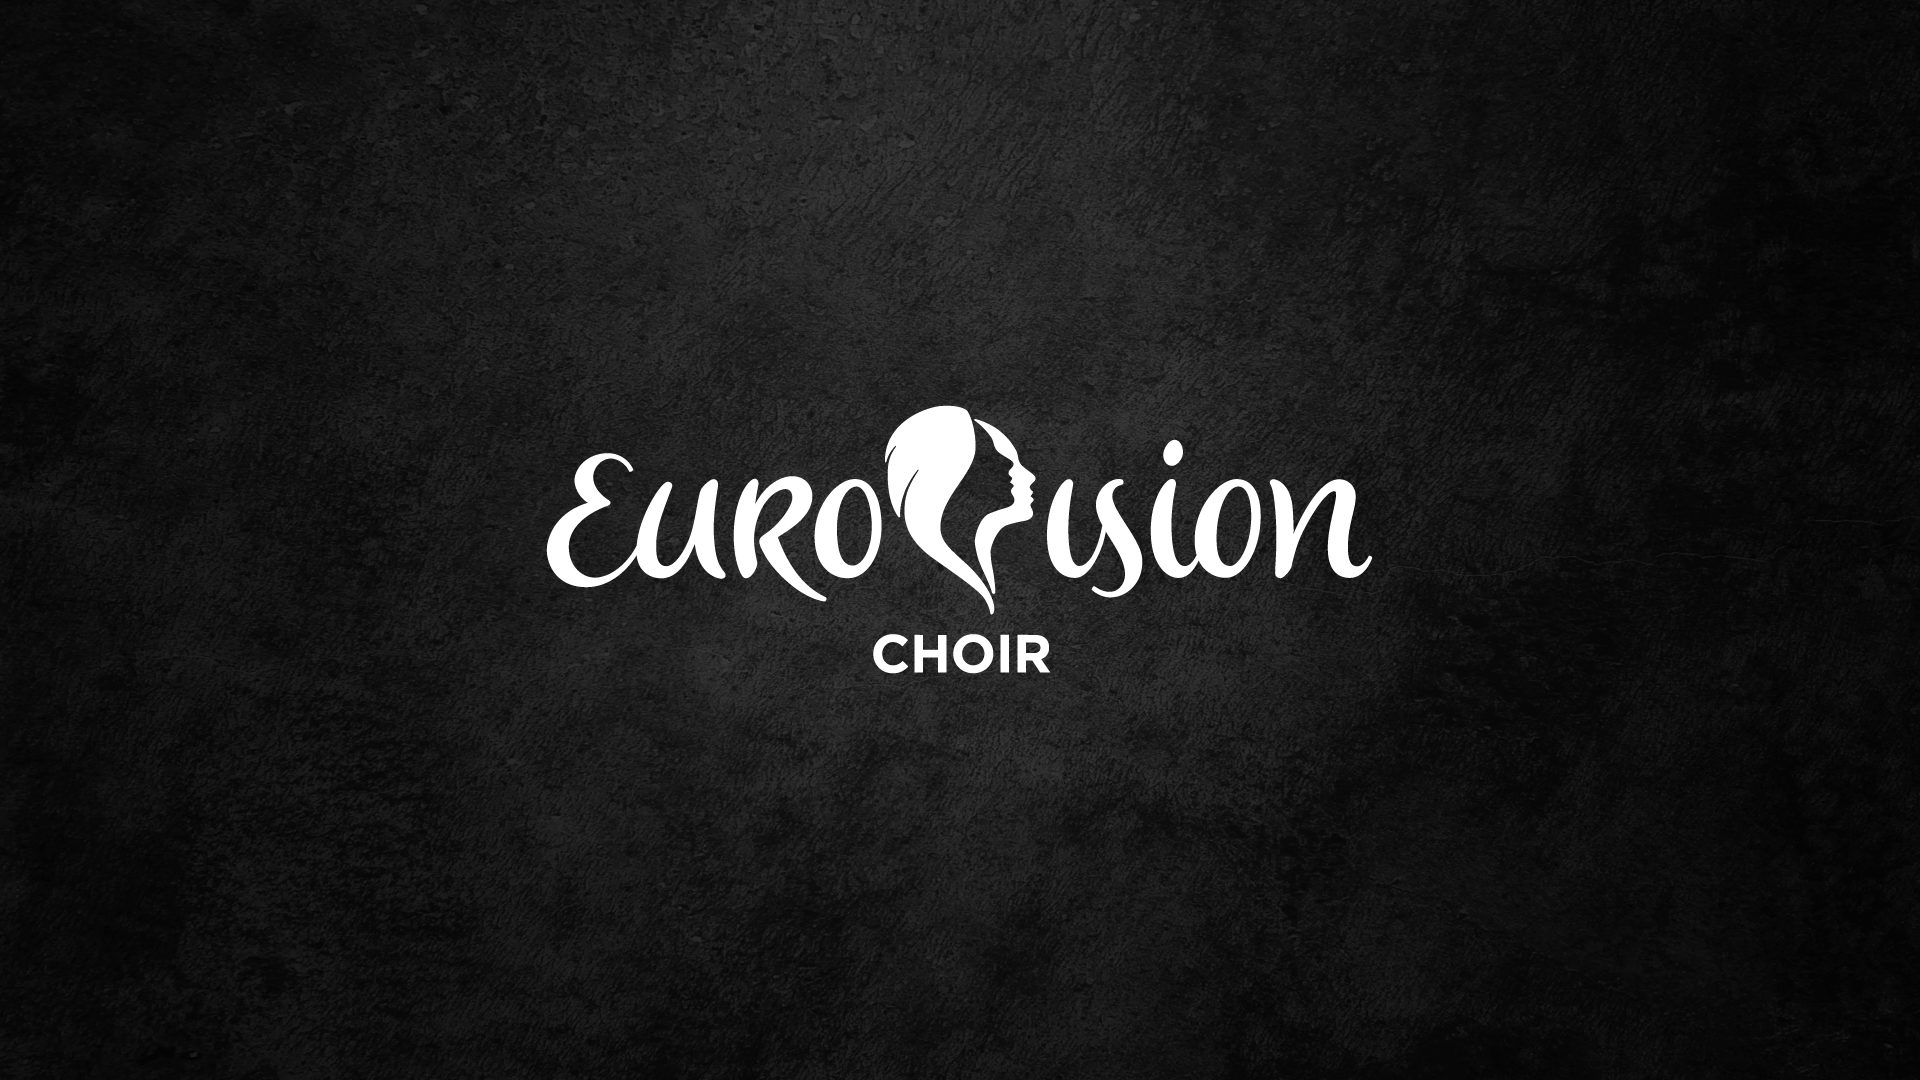 Interkultur espera poder celebrar próximas ediciones del Coro del año de Eurovisión en el futuro